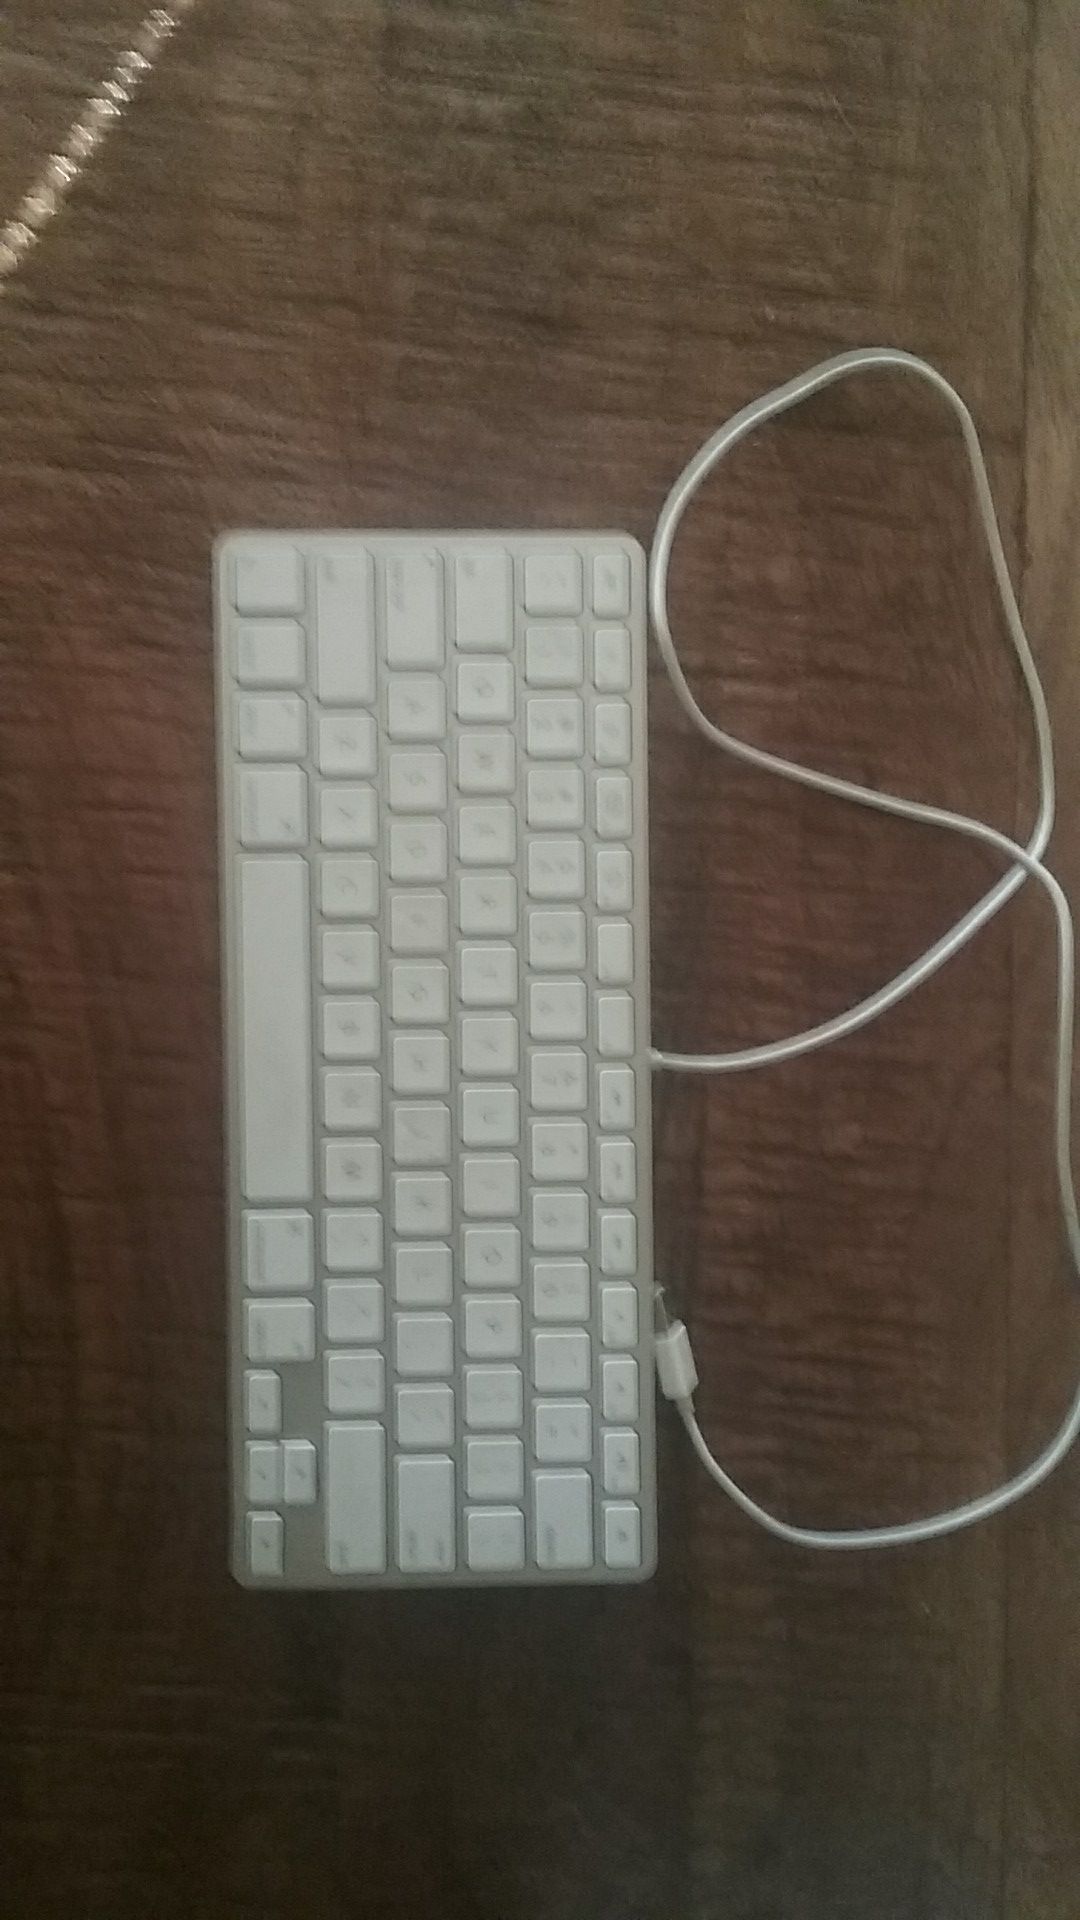 USB Apple keyboard